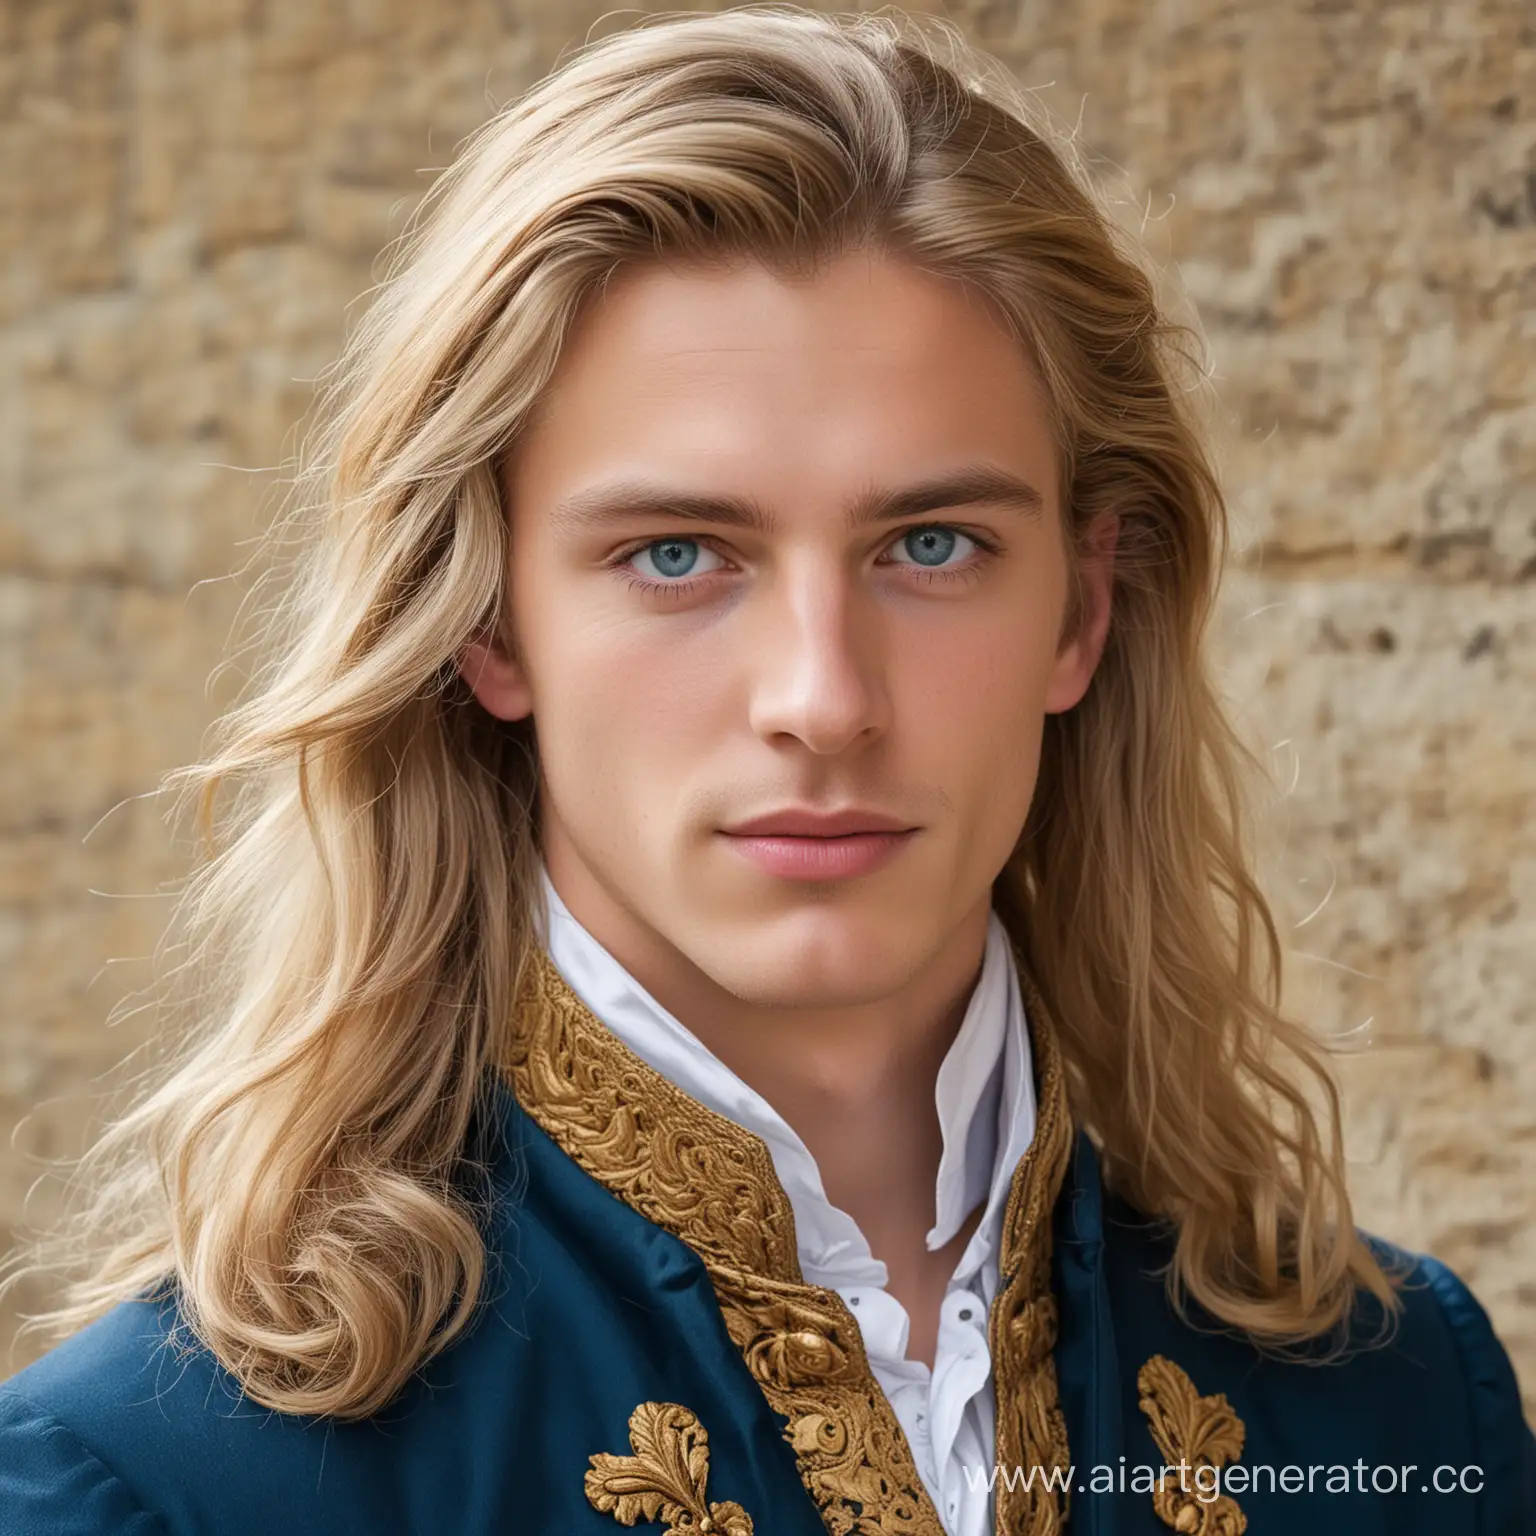 Красивый молодой человек 23 лет. Длинные светлые волосы, яркие голубые глаза, красивые губы. Одет в одежду английского лорда 19 века